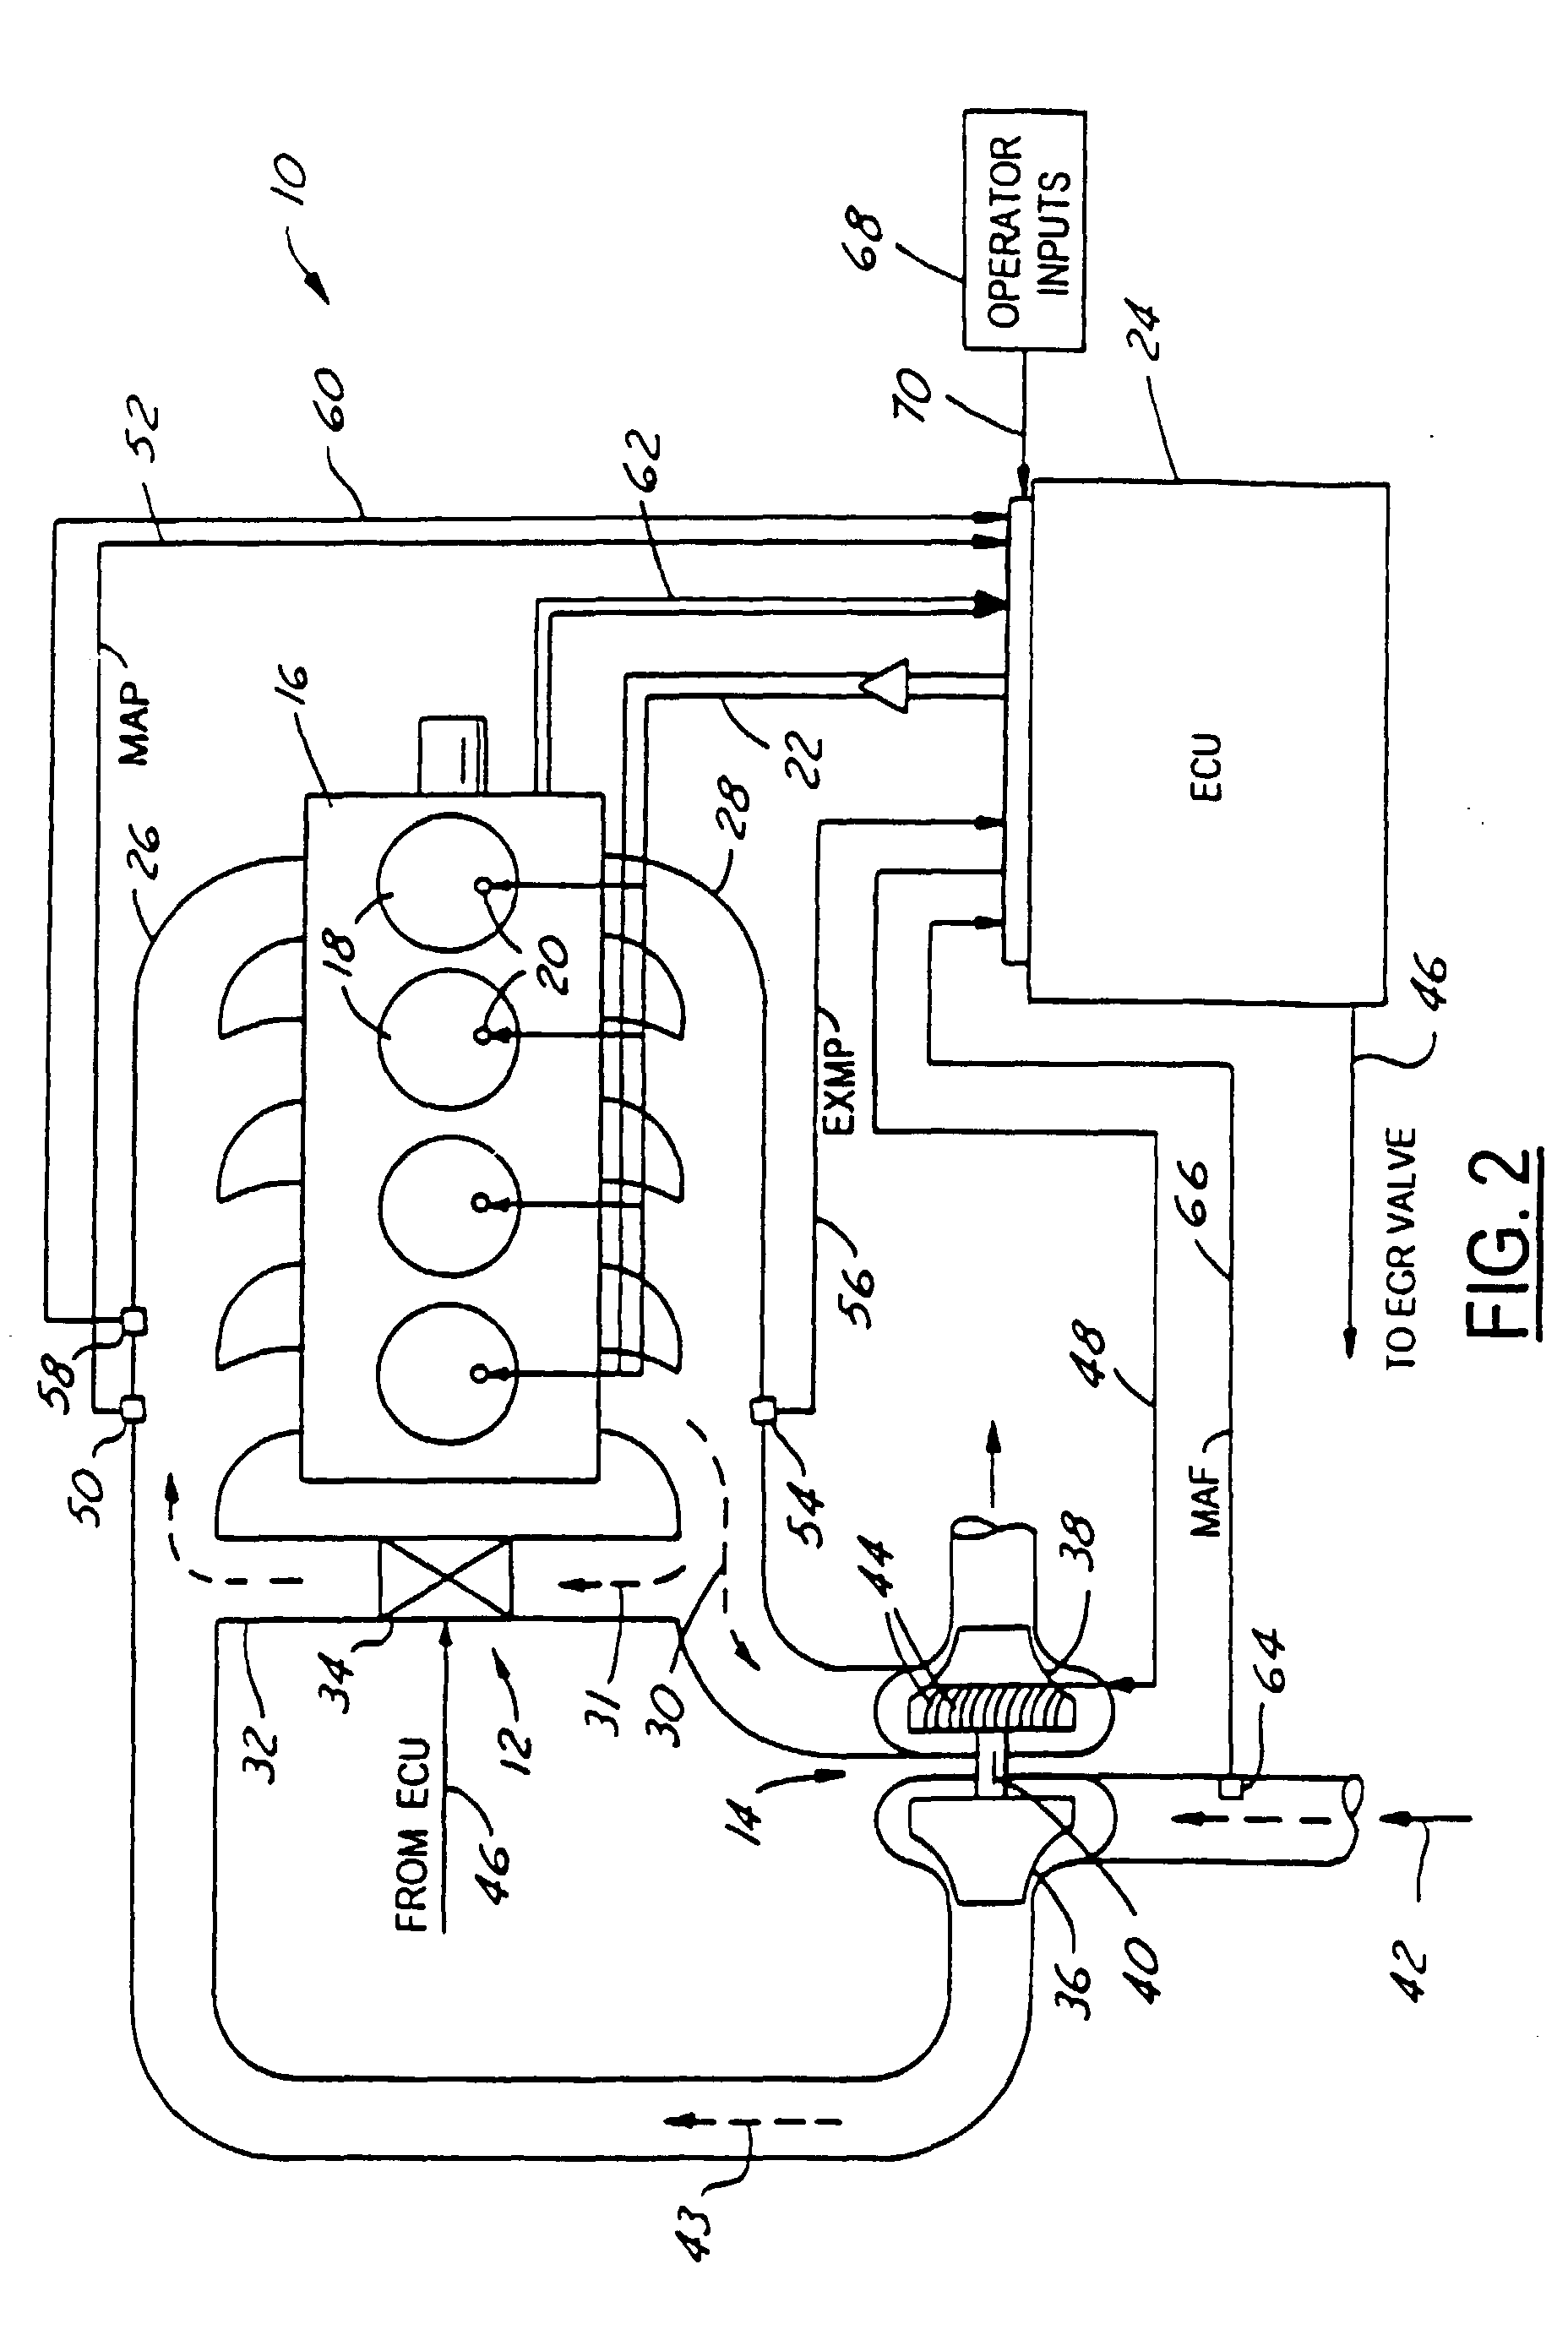 hankison air dryer wiring diagram